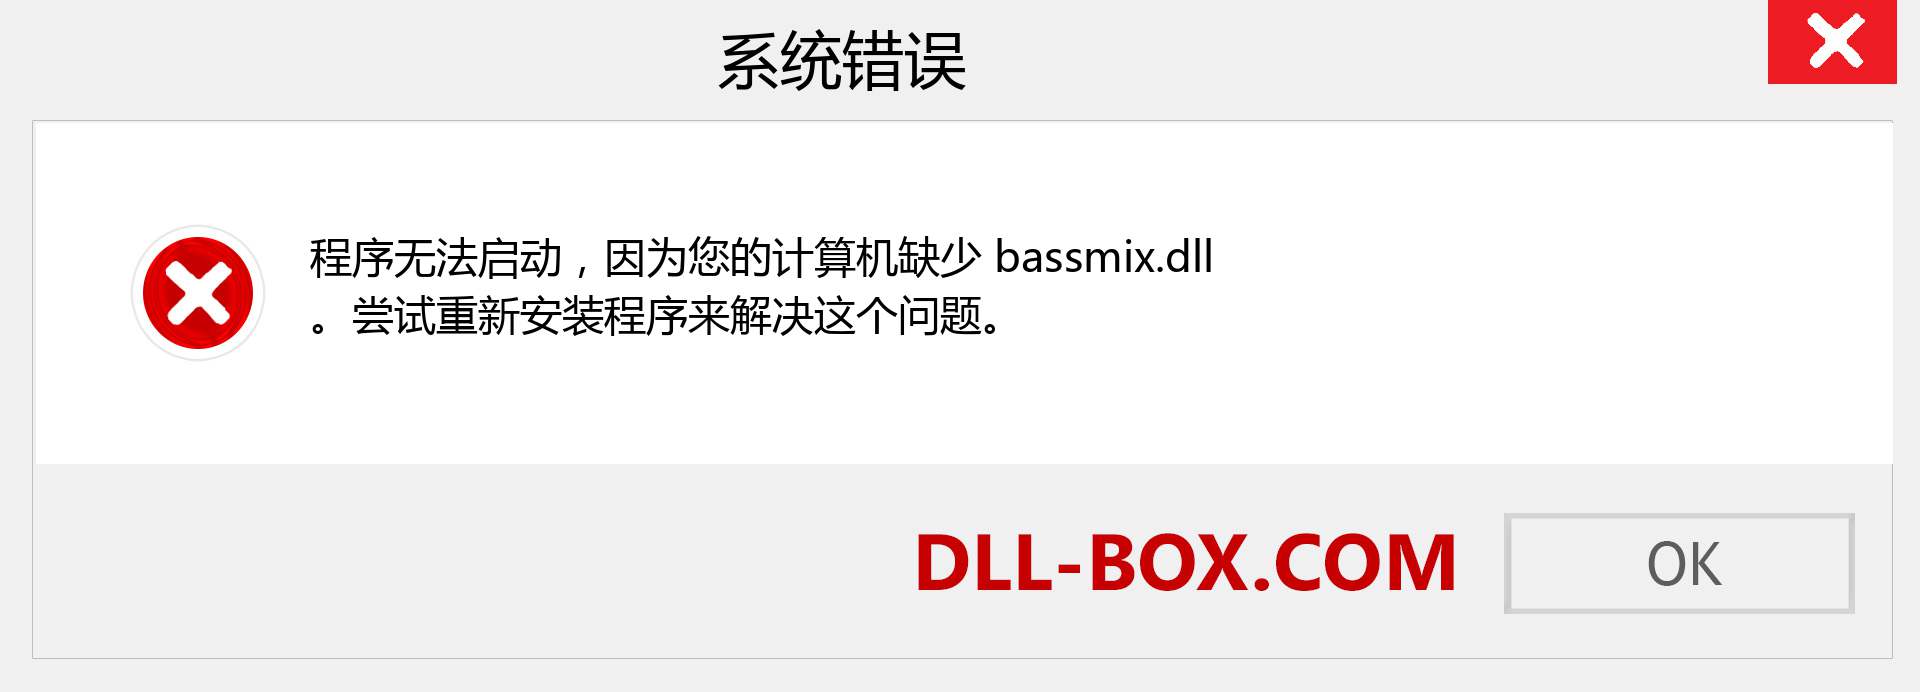 bassmix.dll 文件丢失？。 适用于 Windows 7、8、10 的下载 - 修复 Windows、照片、图像上的 bassmix dll 丢失错误